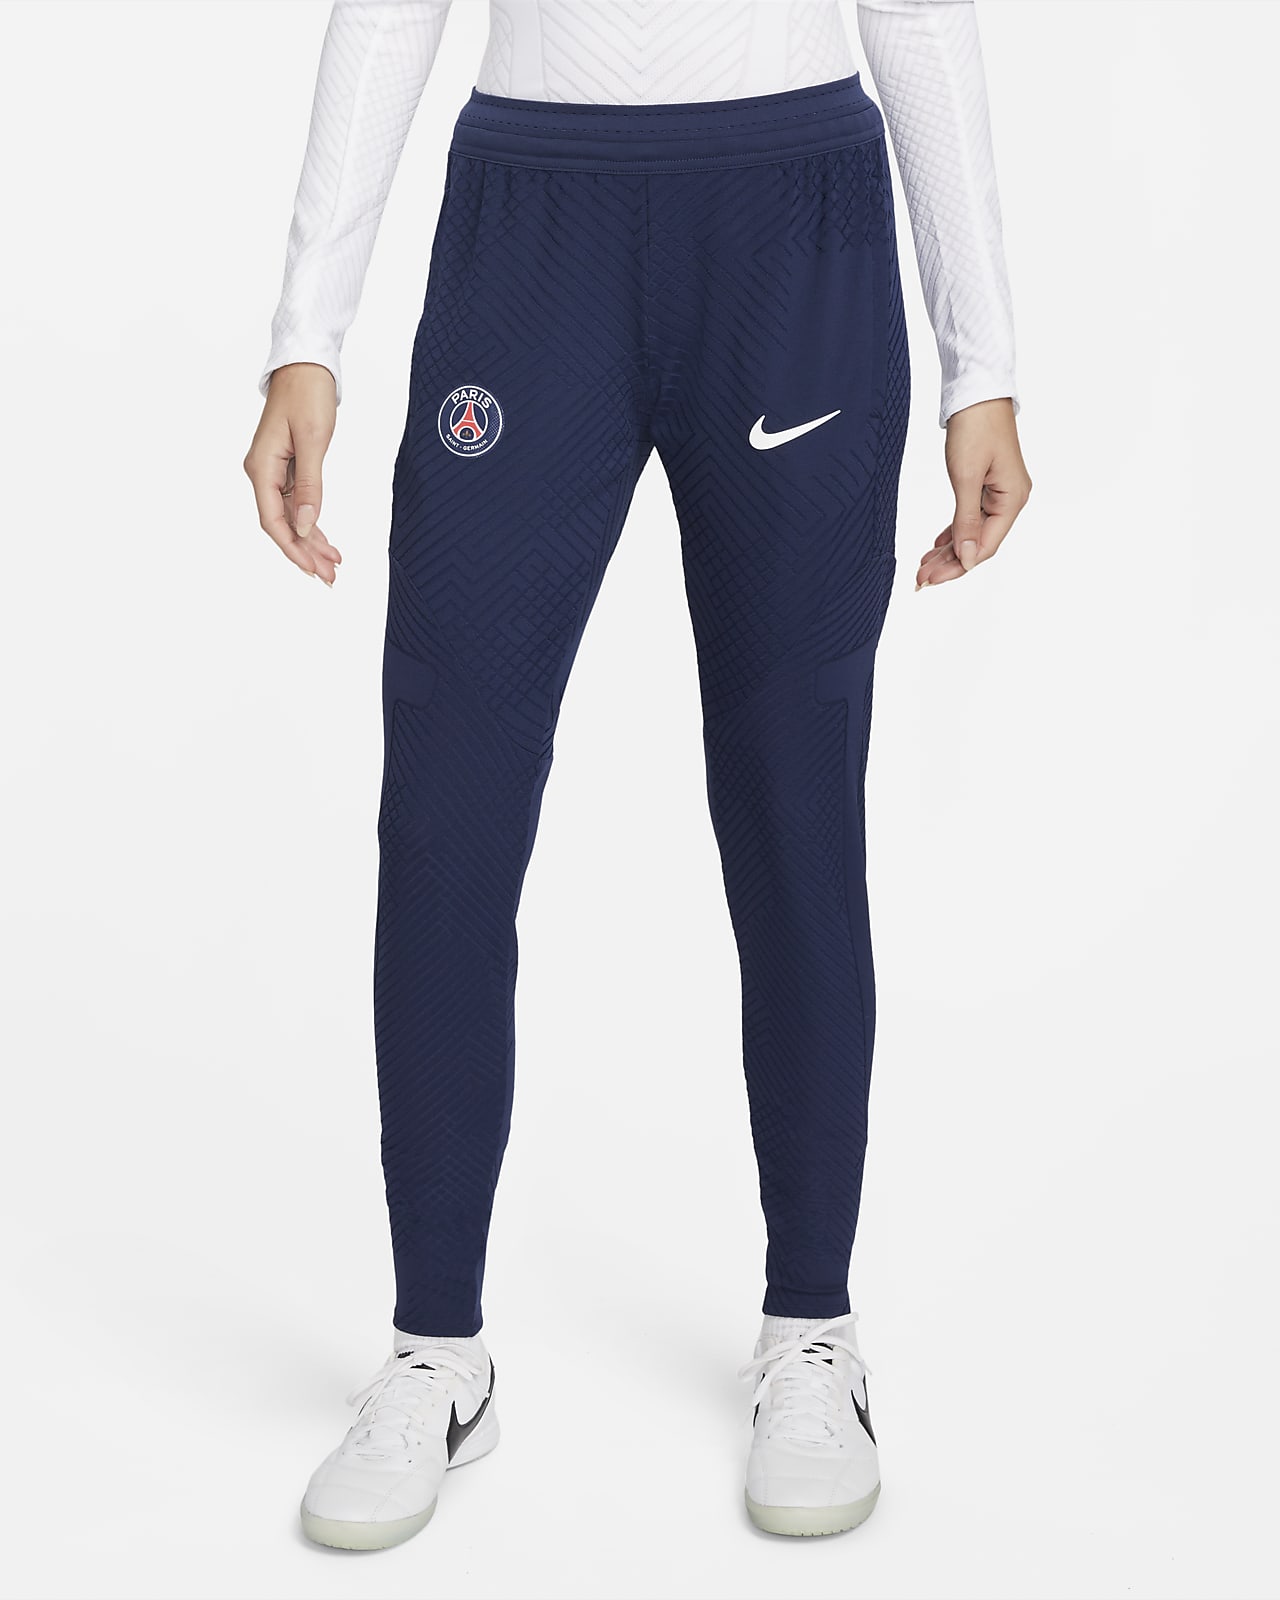 Grey Nike Paris Saint Germain Strike Pants 2021 2022 Mens - Get The Label